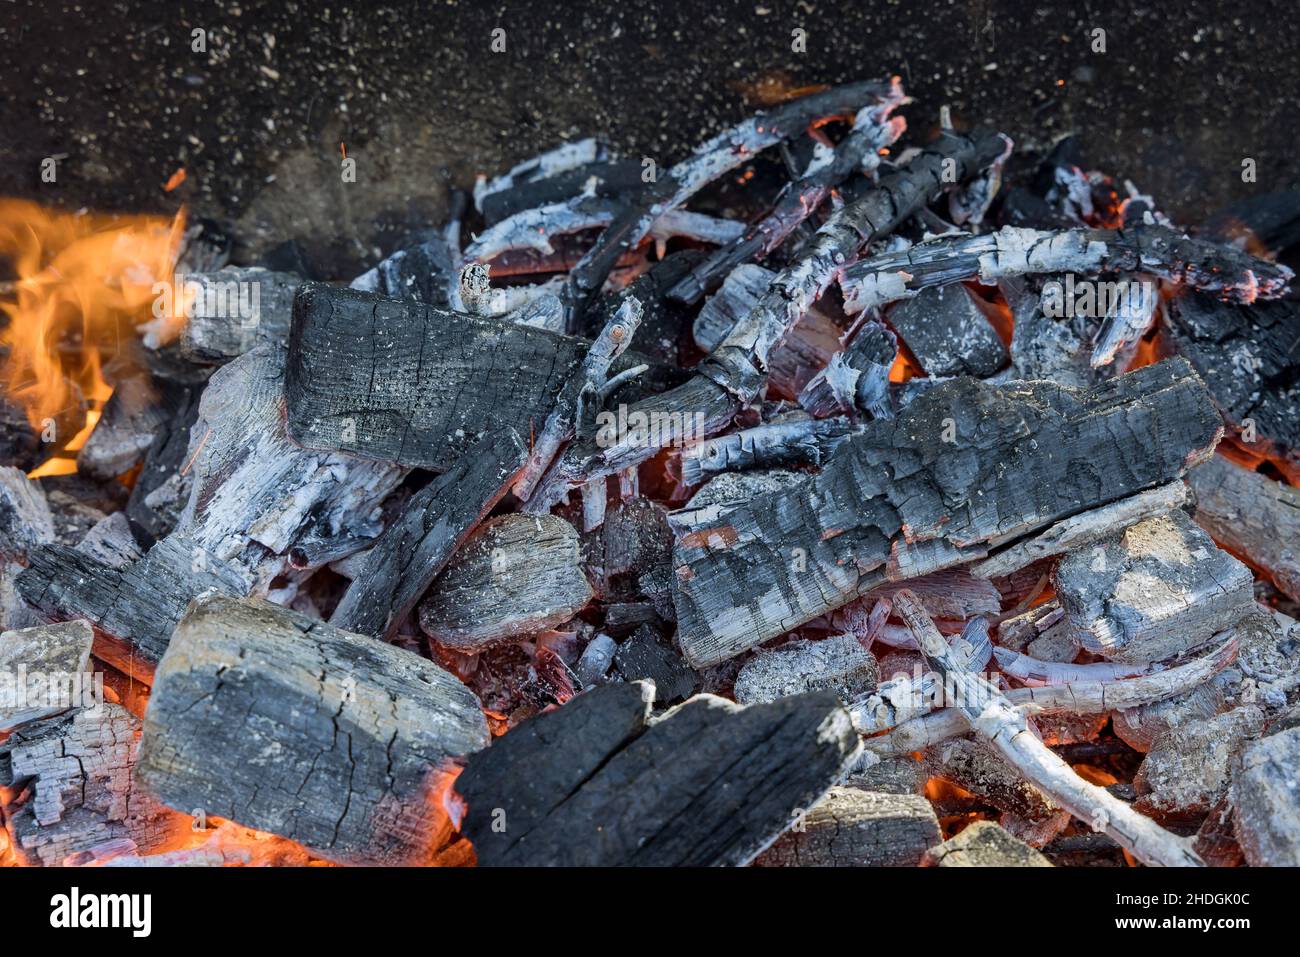 Griller barbecue noir vide avec des barbecues au feu flamboyant un gril prêt pour la cuisson des aliments Banque D'Images